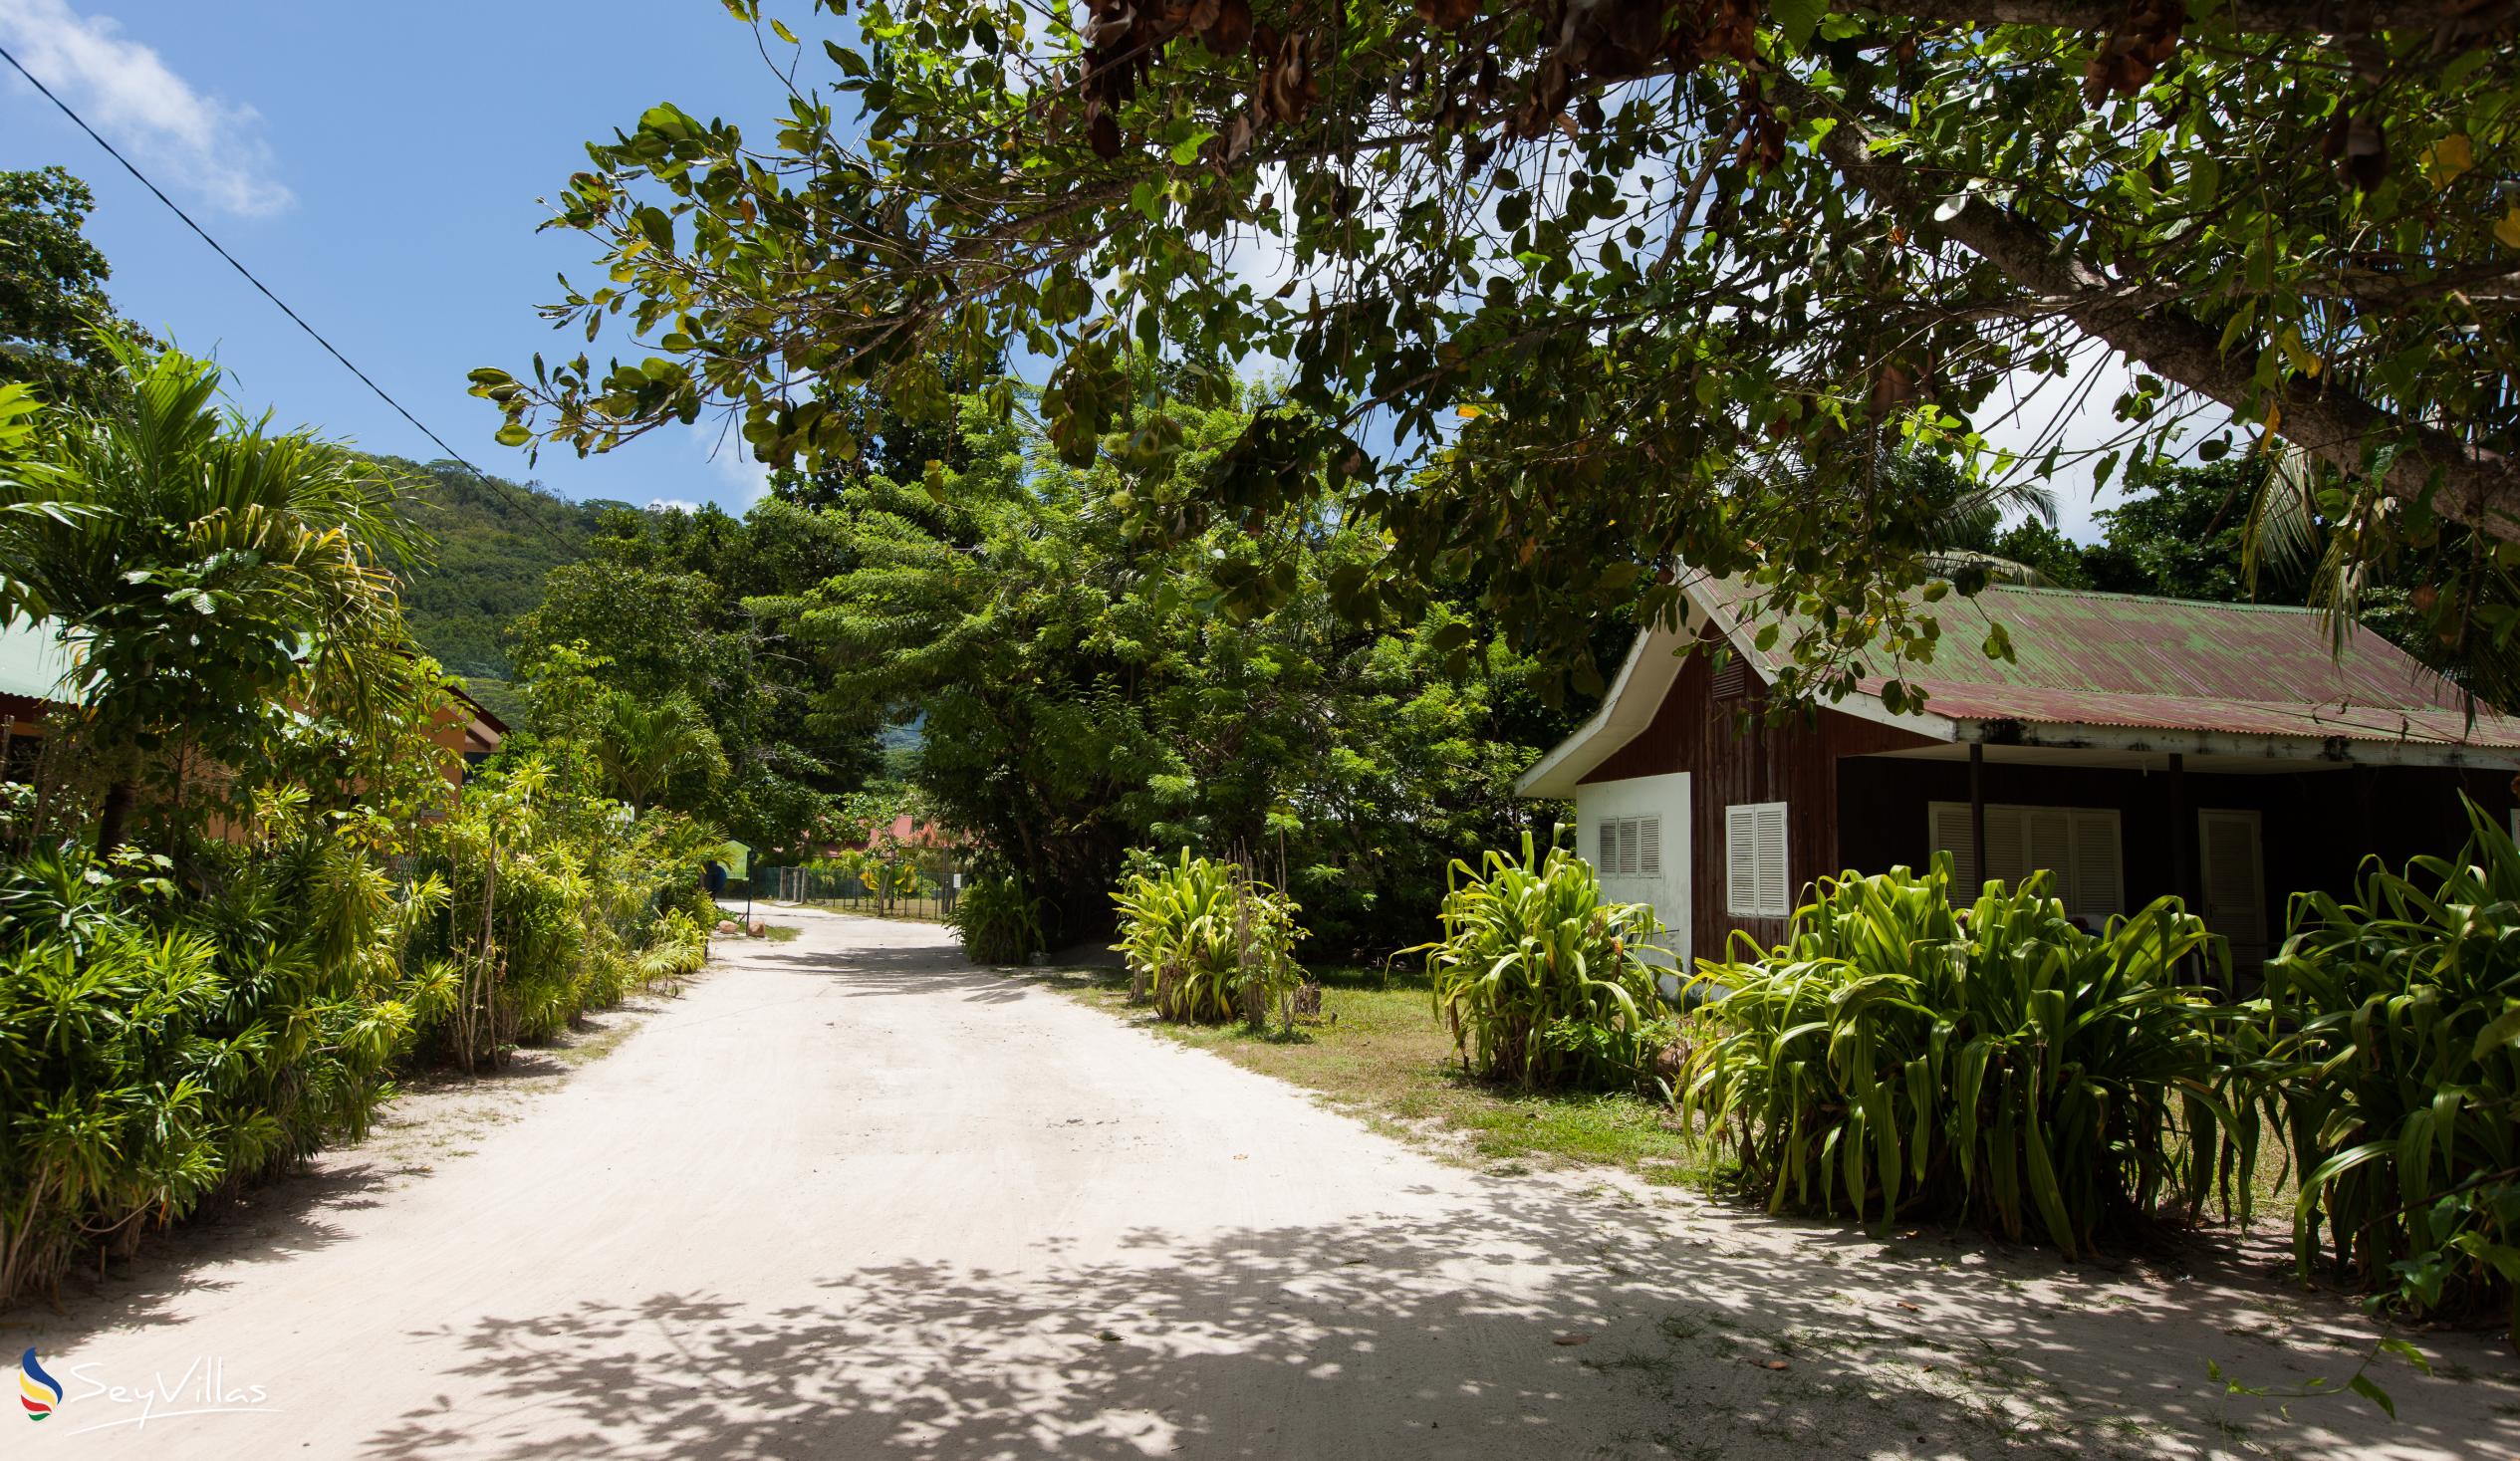 Photo 70: Villa Charme De L'ile - Location - La Digue (Seychelles)